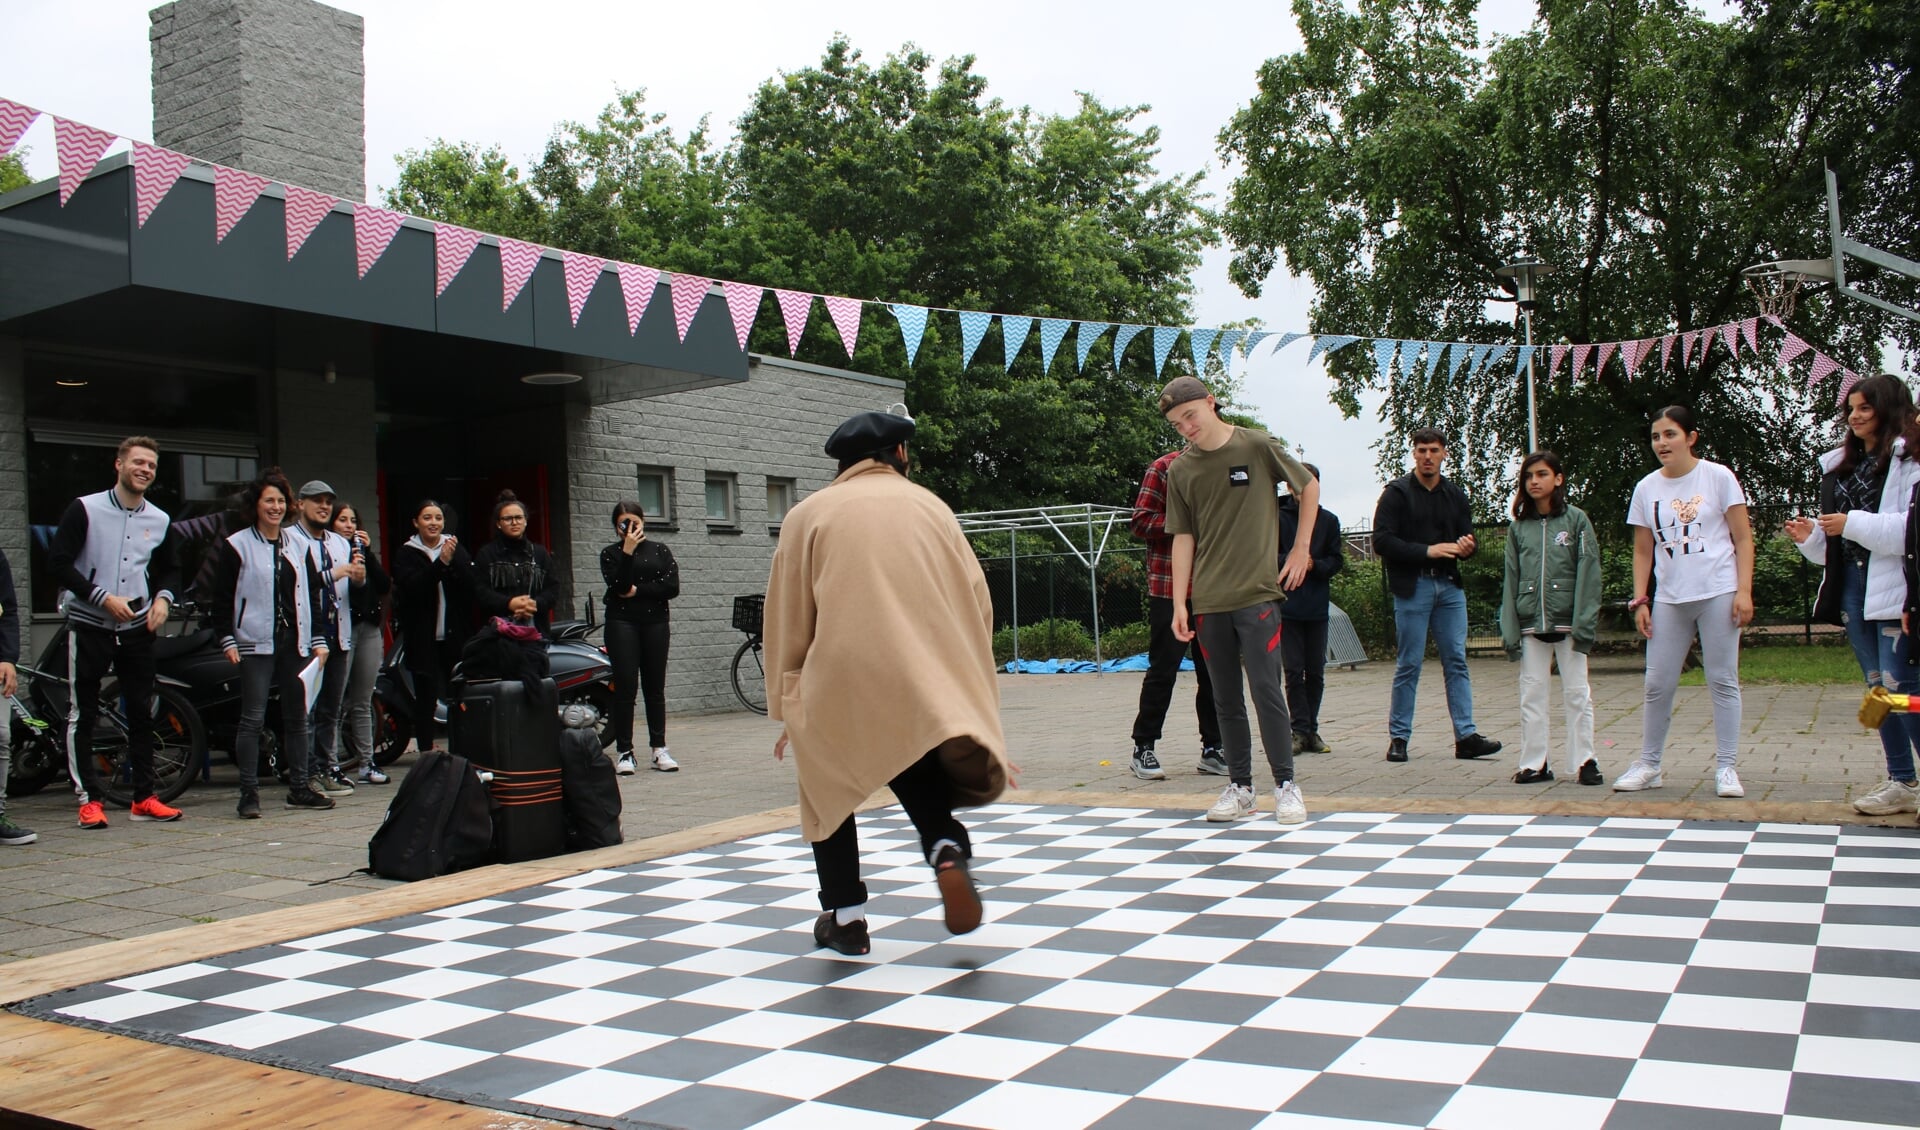 De Urban Dance Grounds in Den Bosch zijn bedoeld om jongeren positief te activeren. 